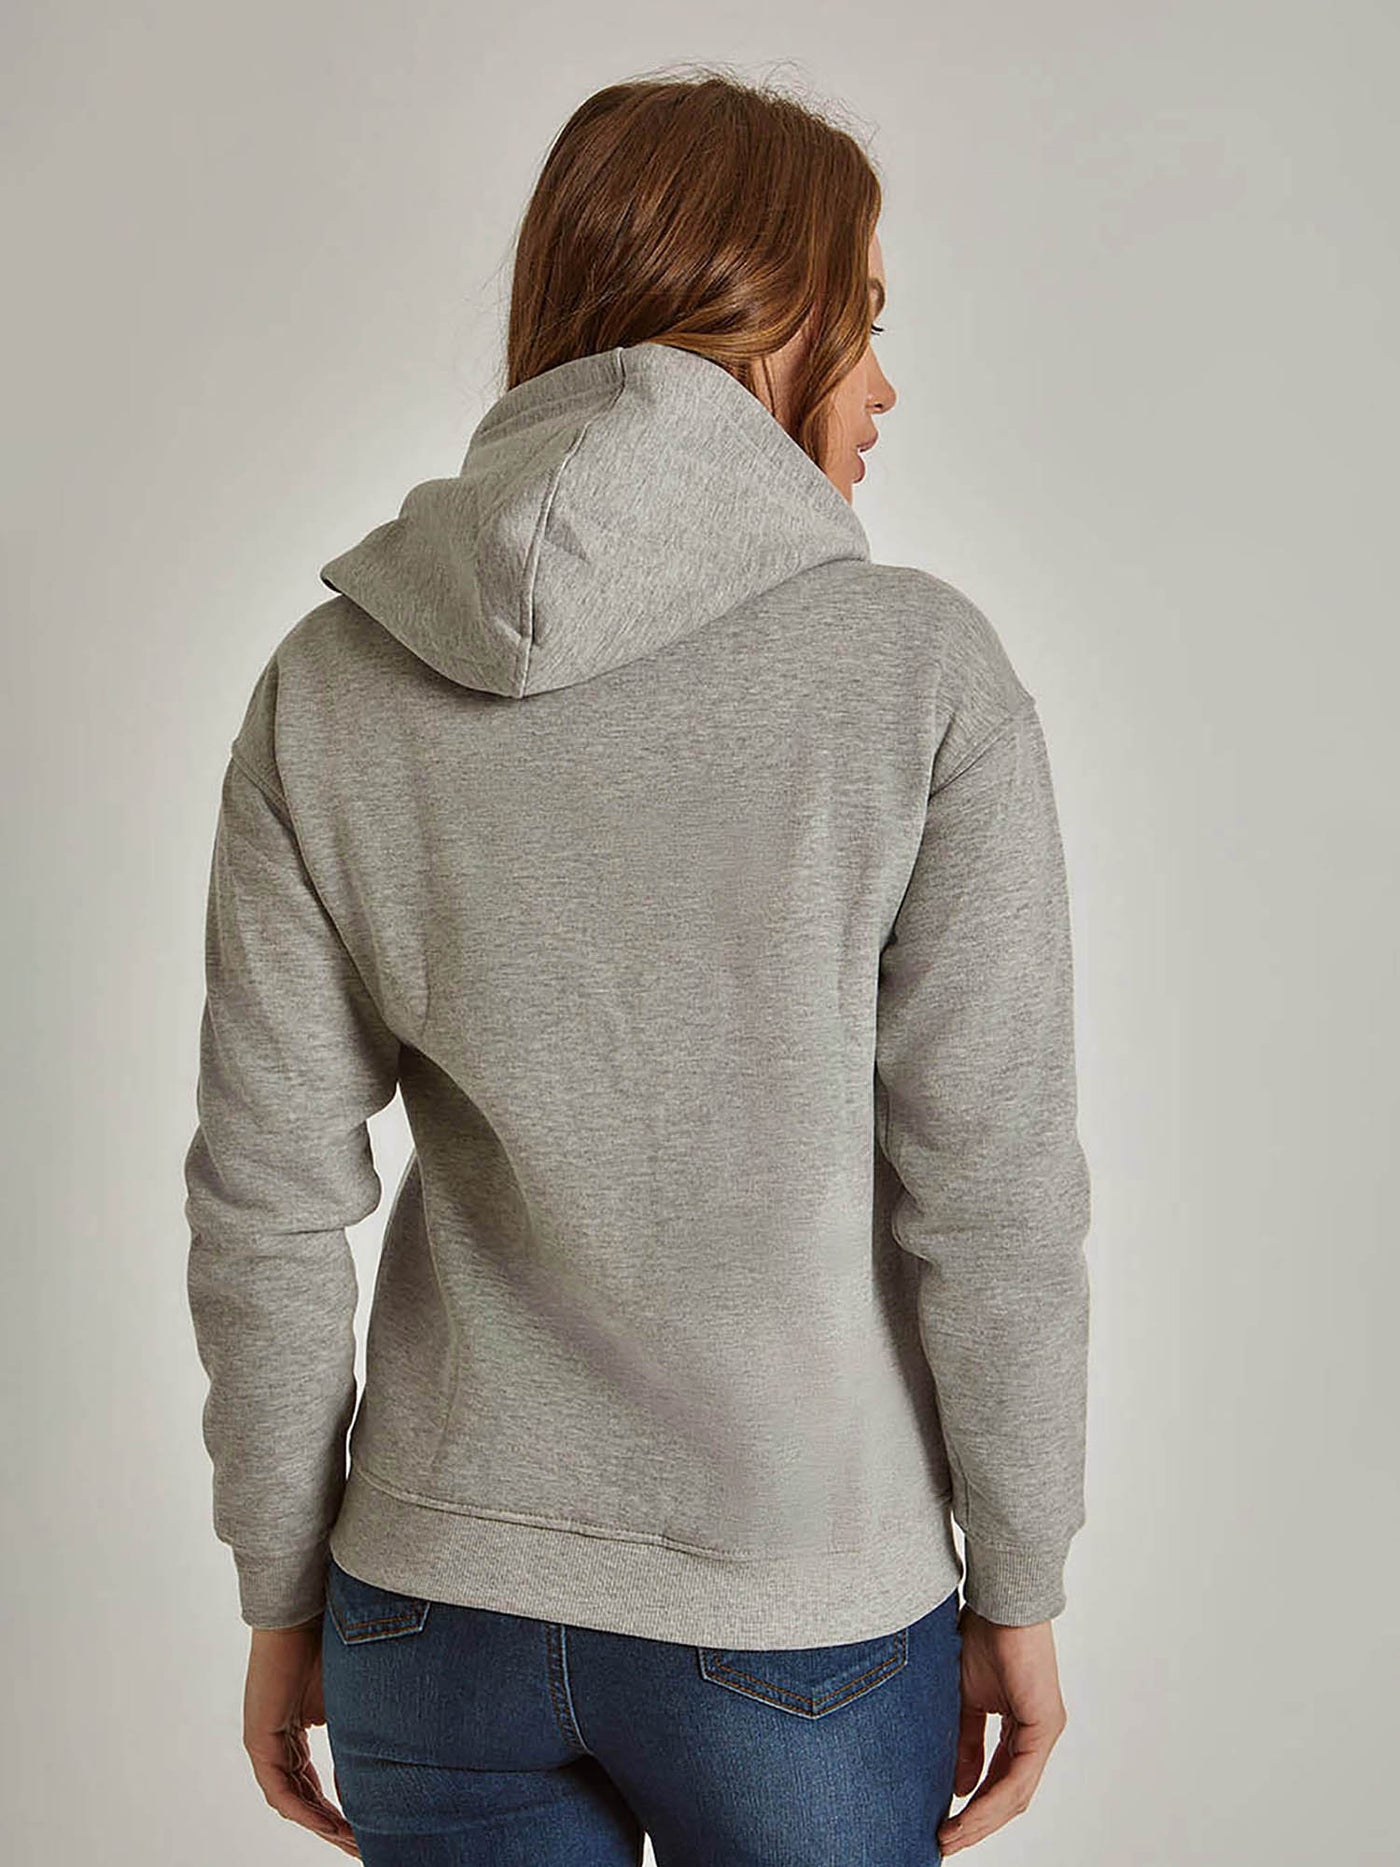 Sweatshirt - Hooded - Zipped